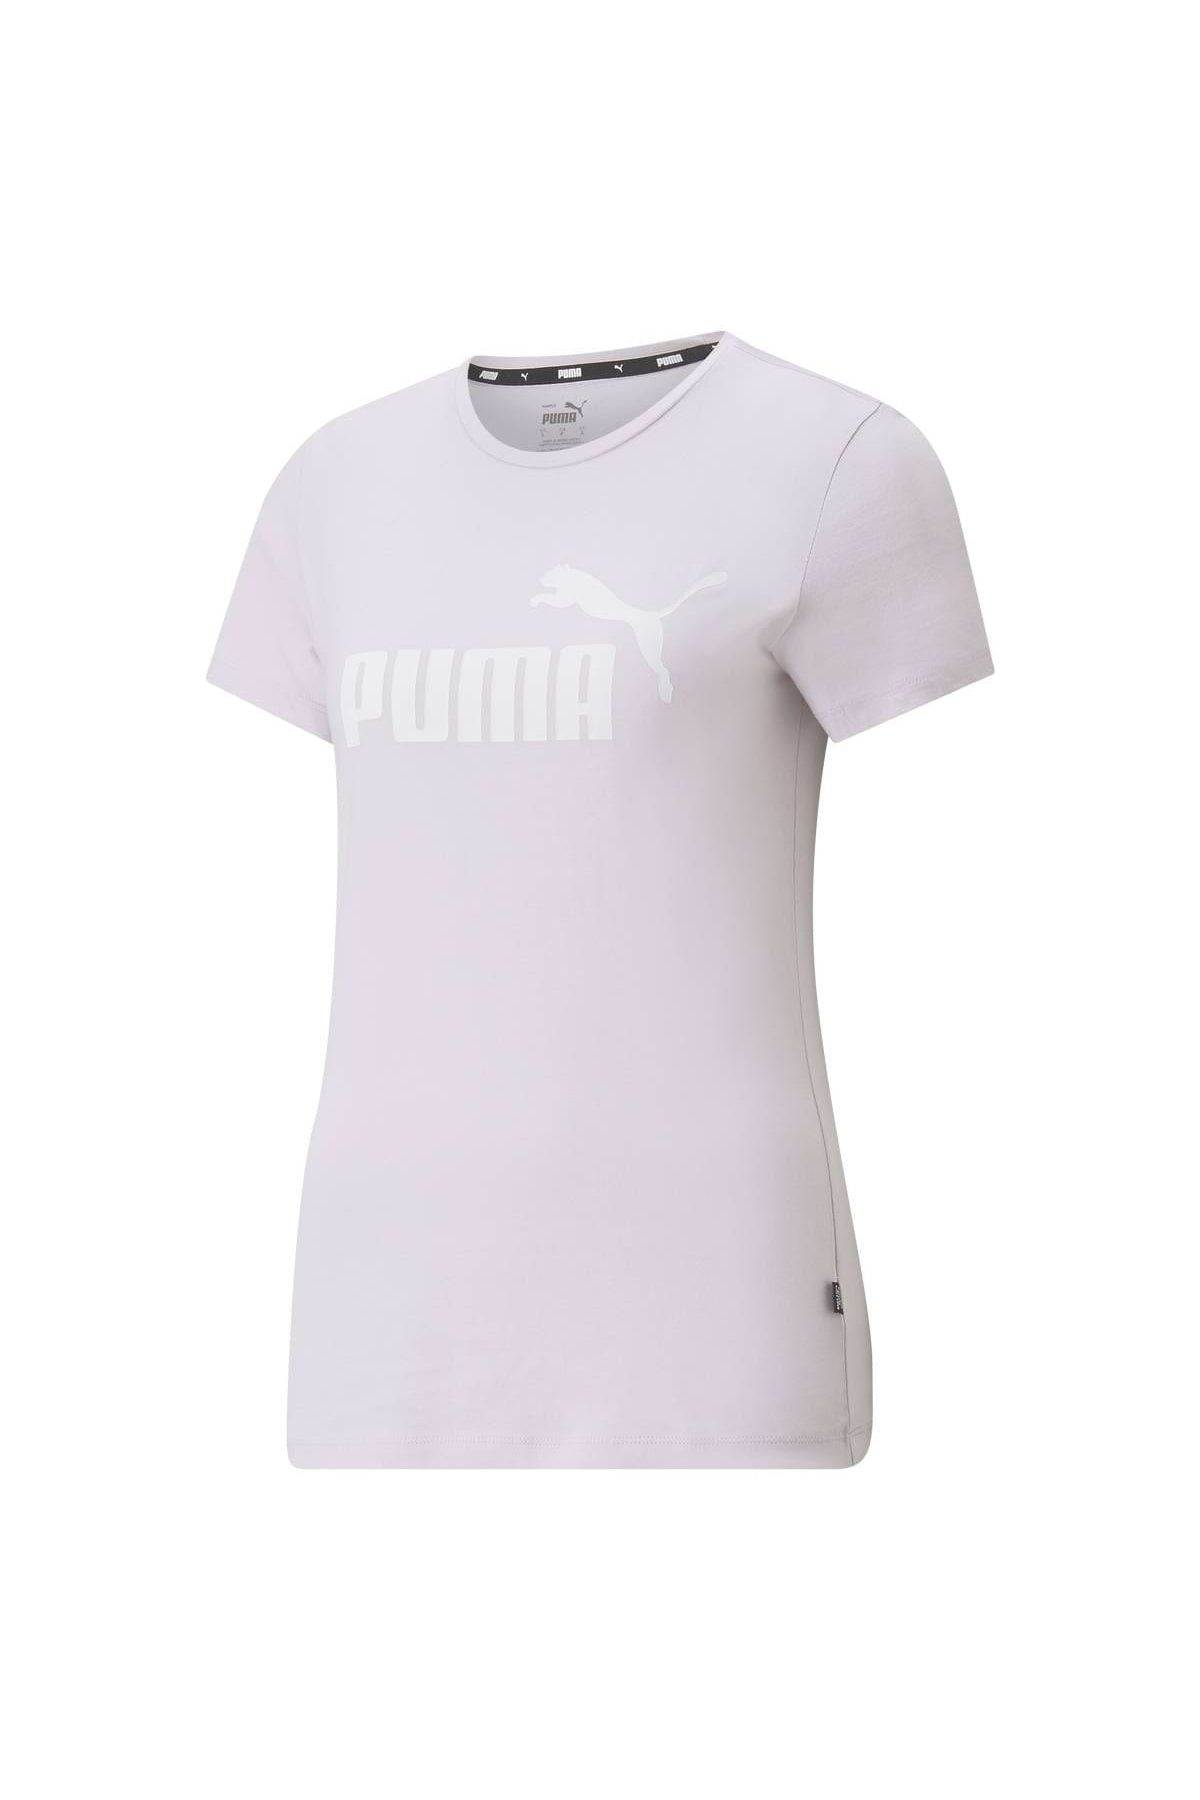 T-Shirt (S), Trendyol - Puma - Tee Damen uni Essentials Rundhals, Logo Kurzarm,